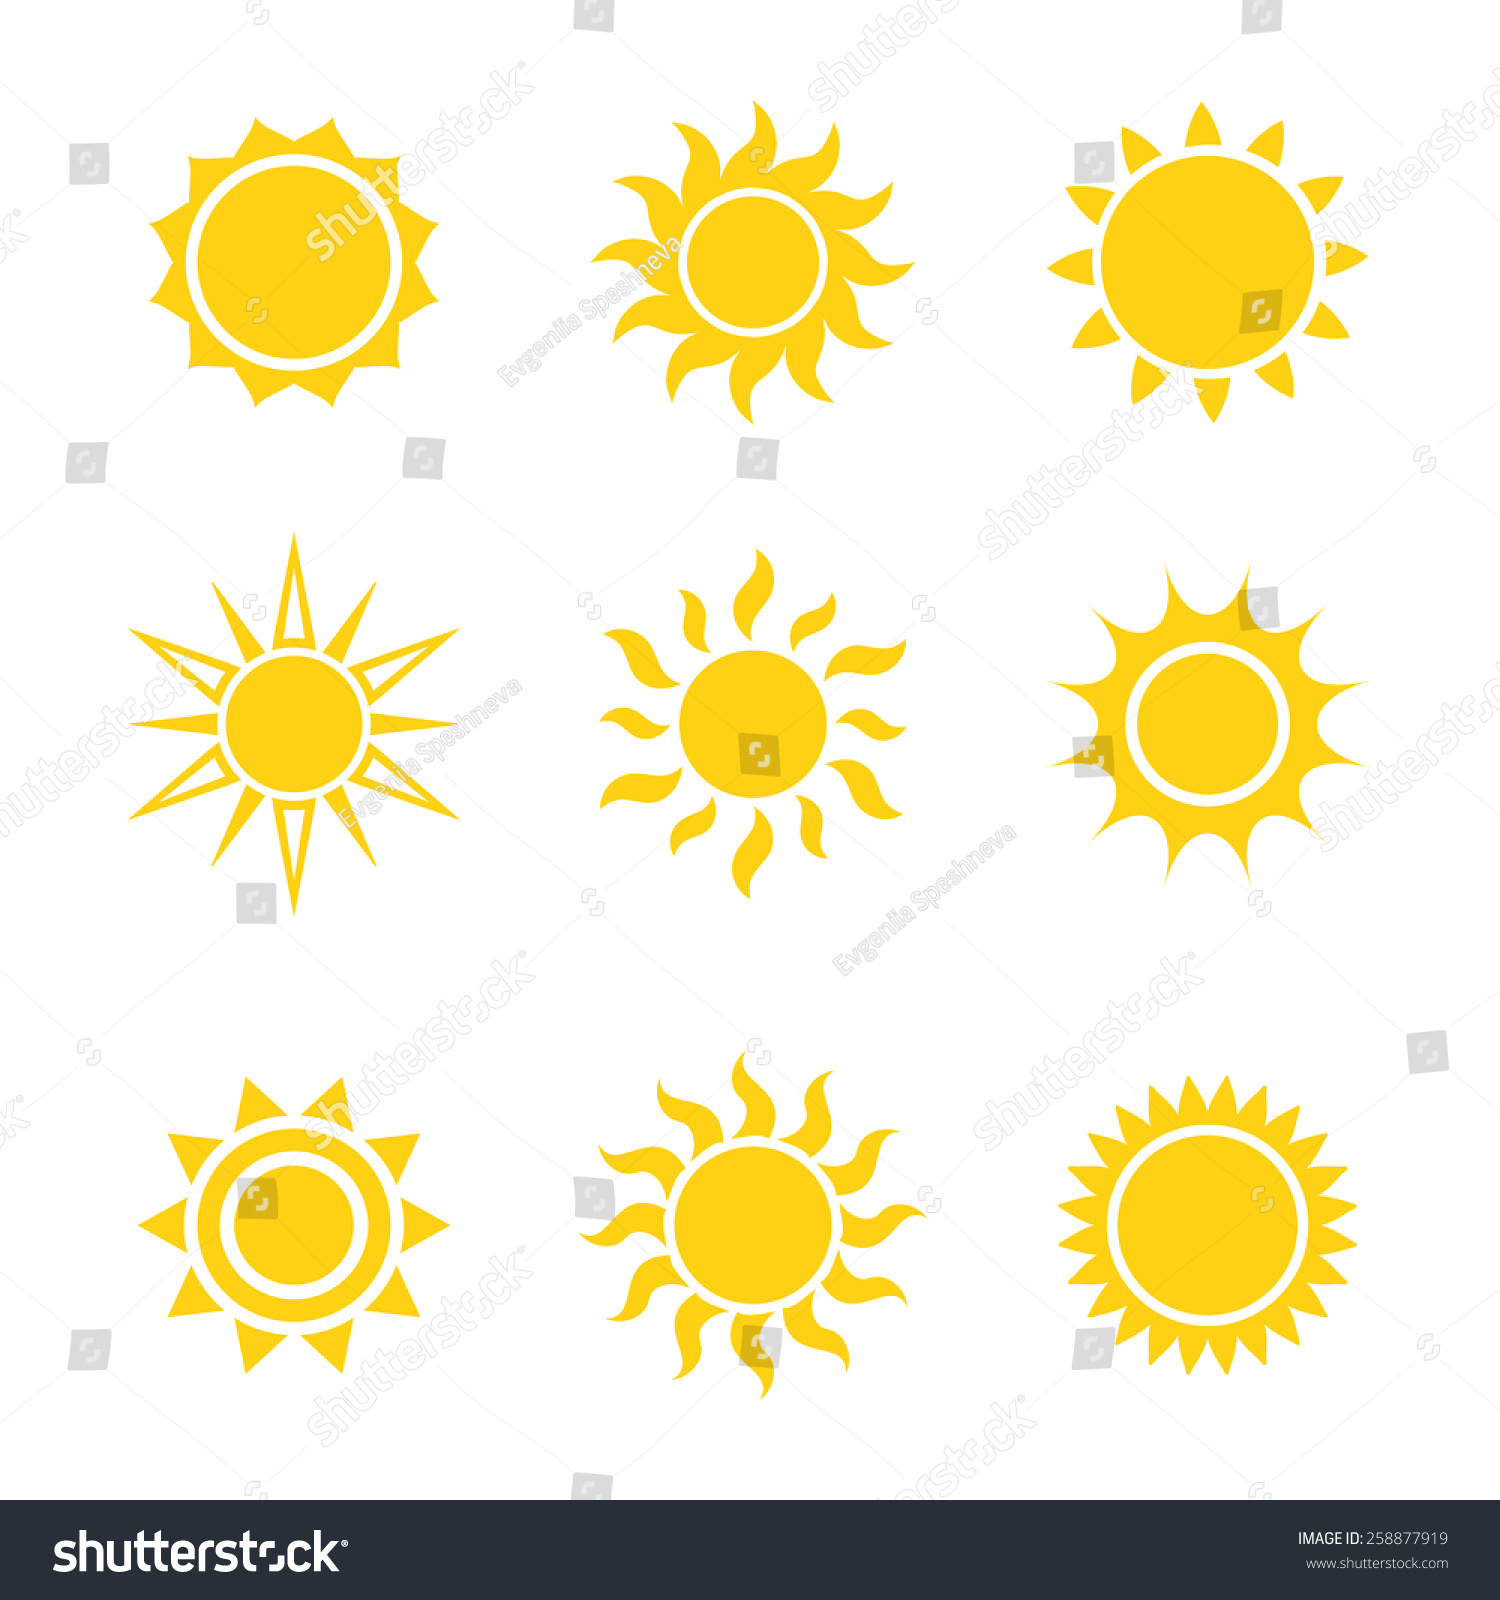 Sun icon set, vector illustration #258877919